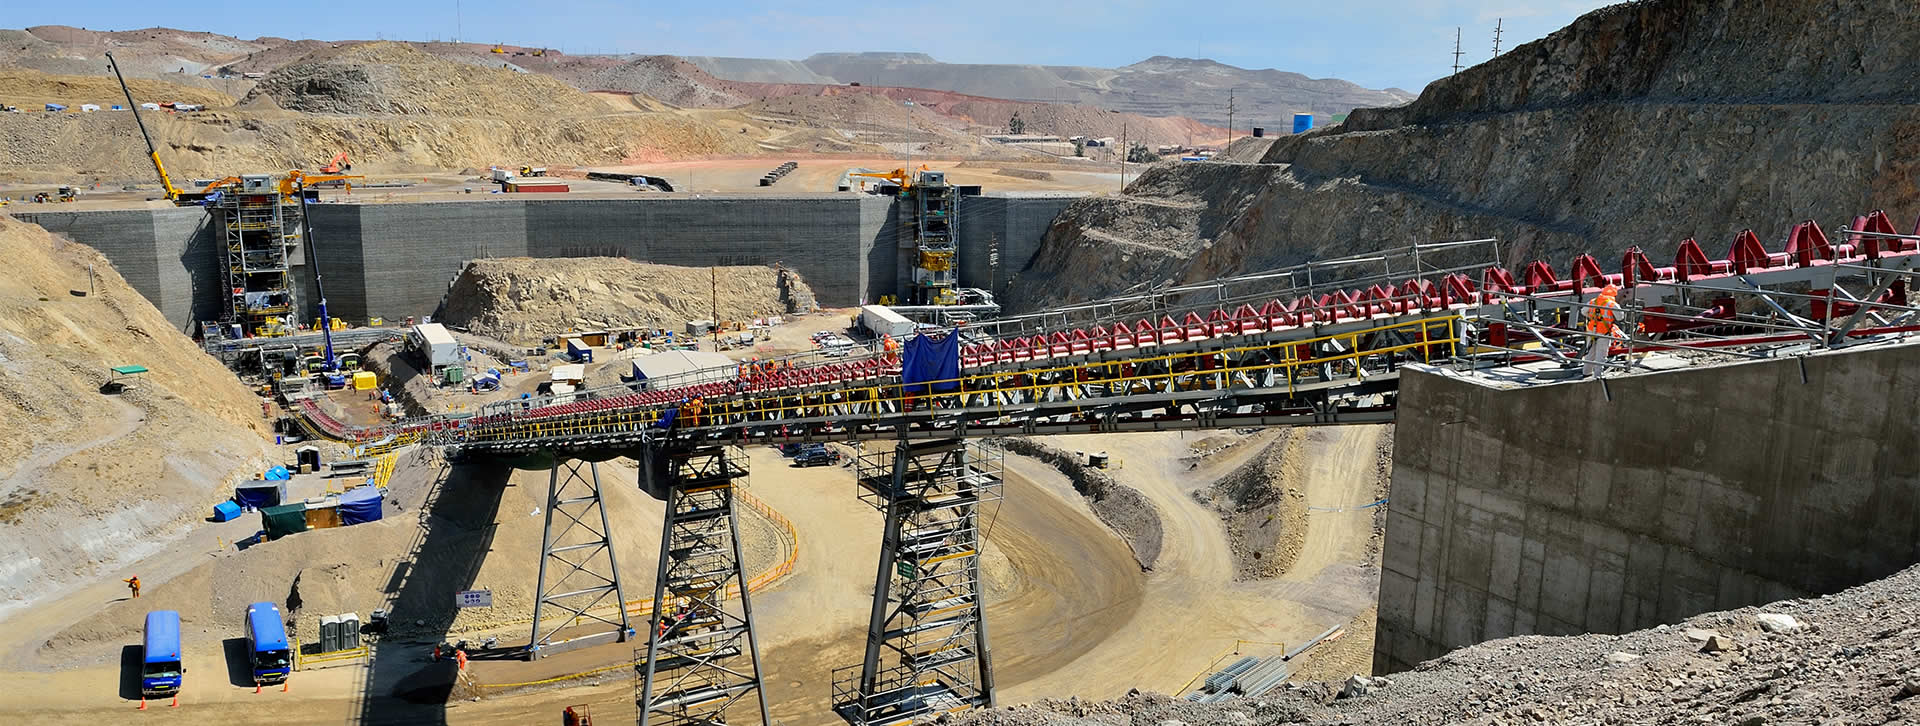 Vial y Vives - Cerro Verde es un complejo minero de cobre y molibdeno ubicado en el distrito de Uchumayo en la provincia de Arequipa en Perú